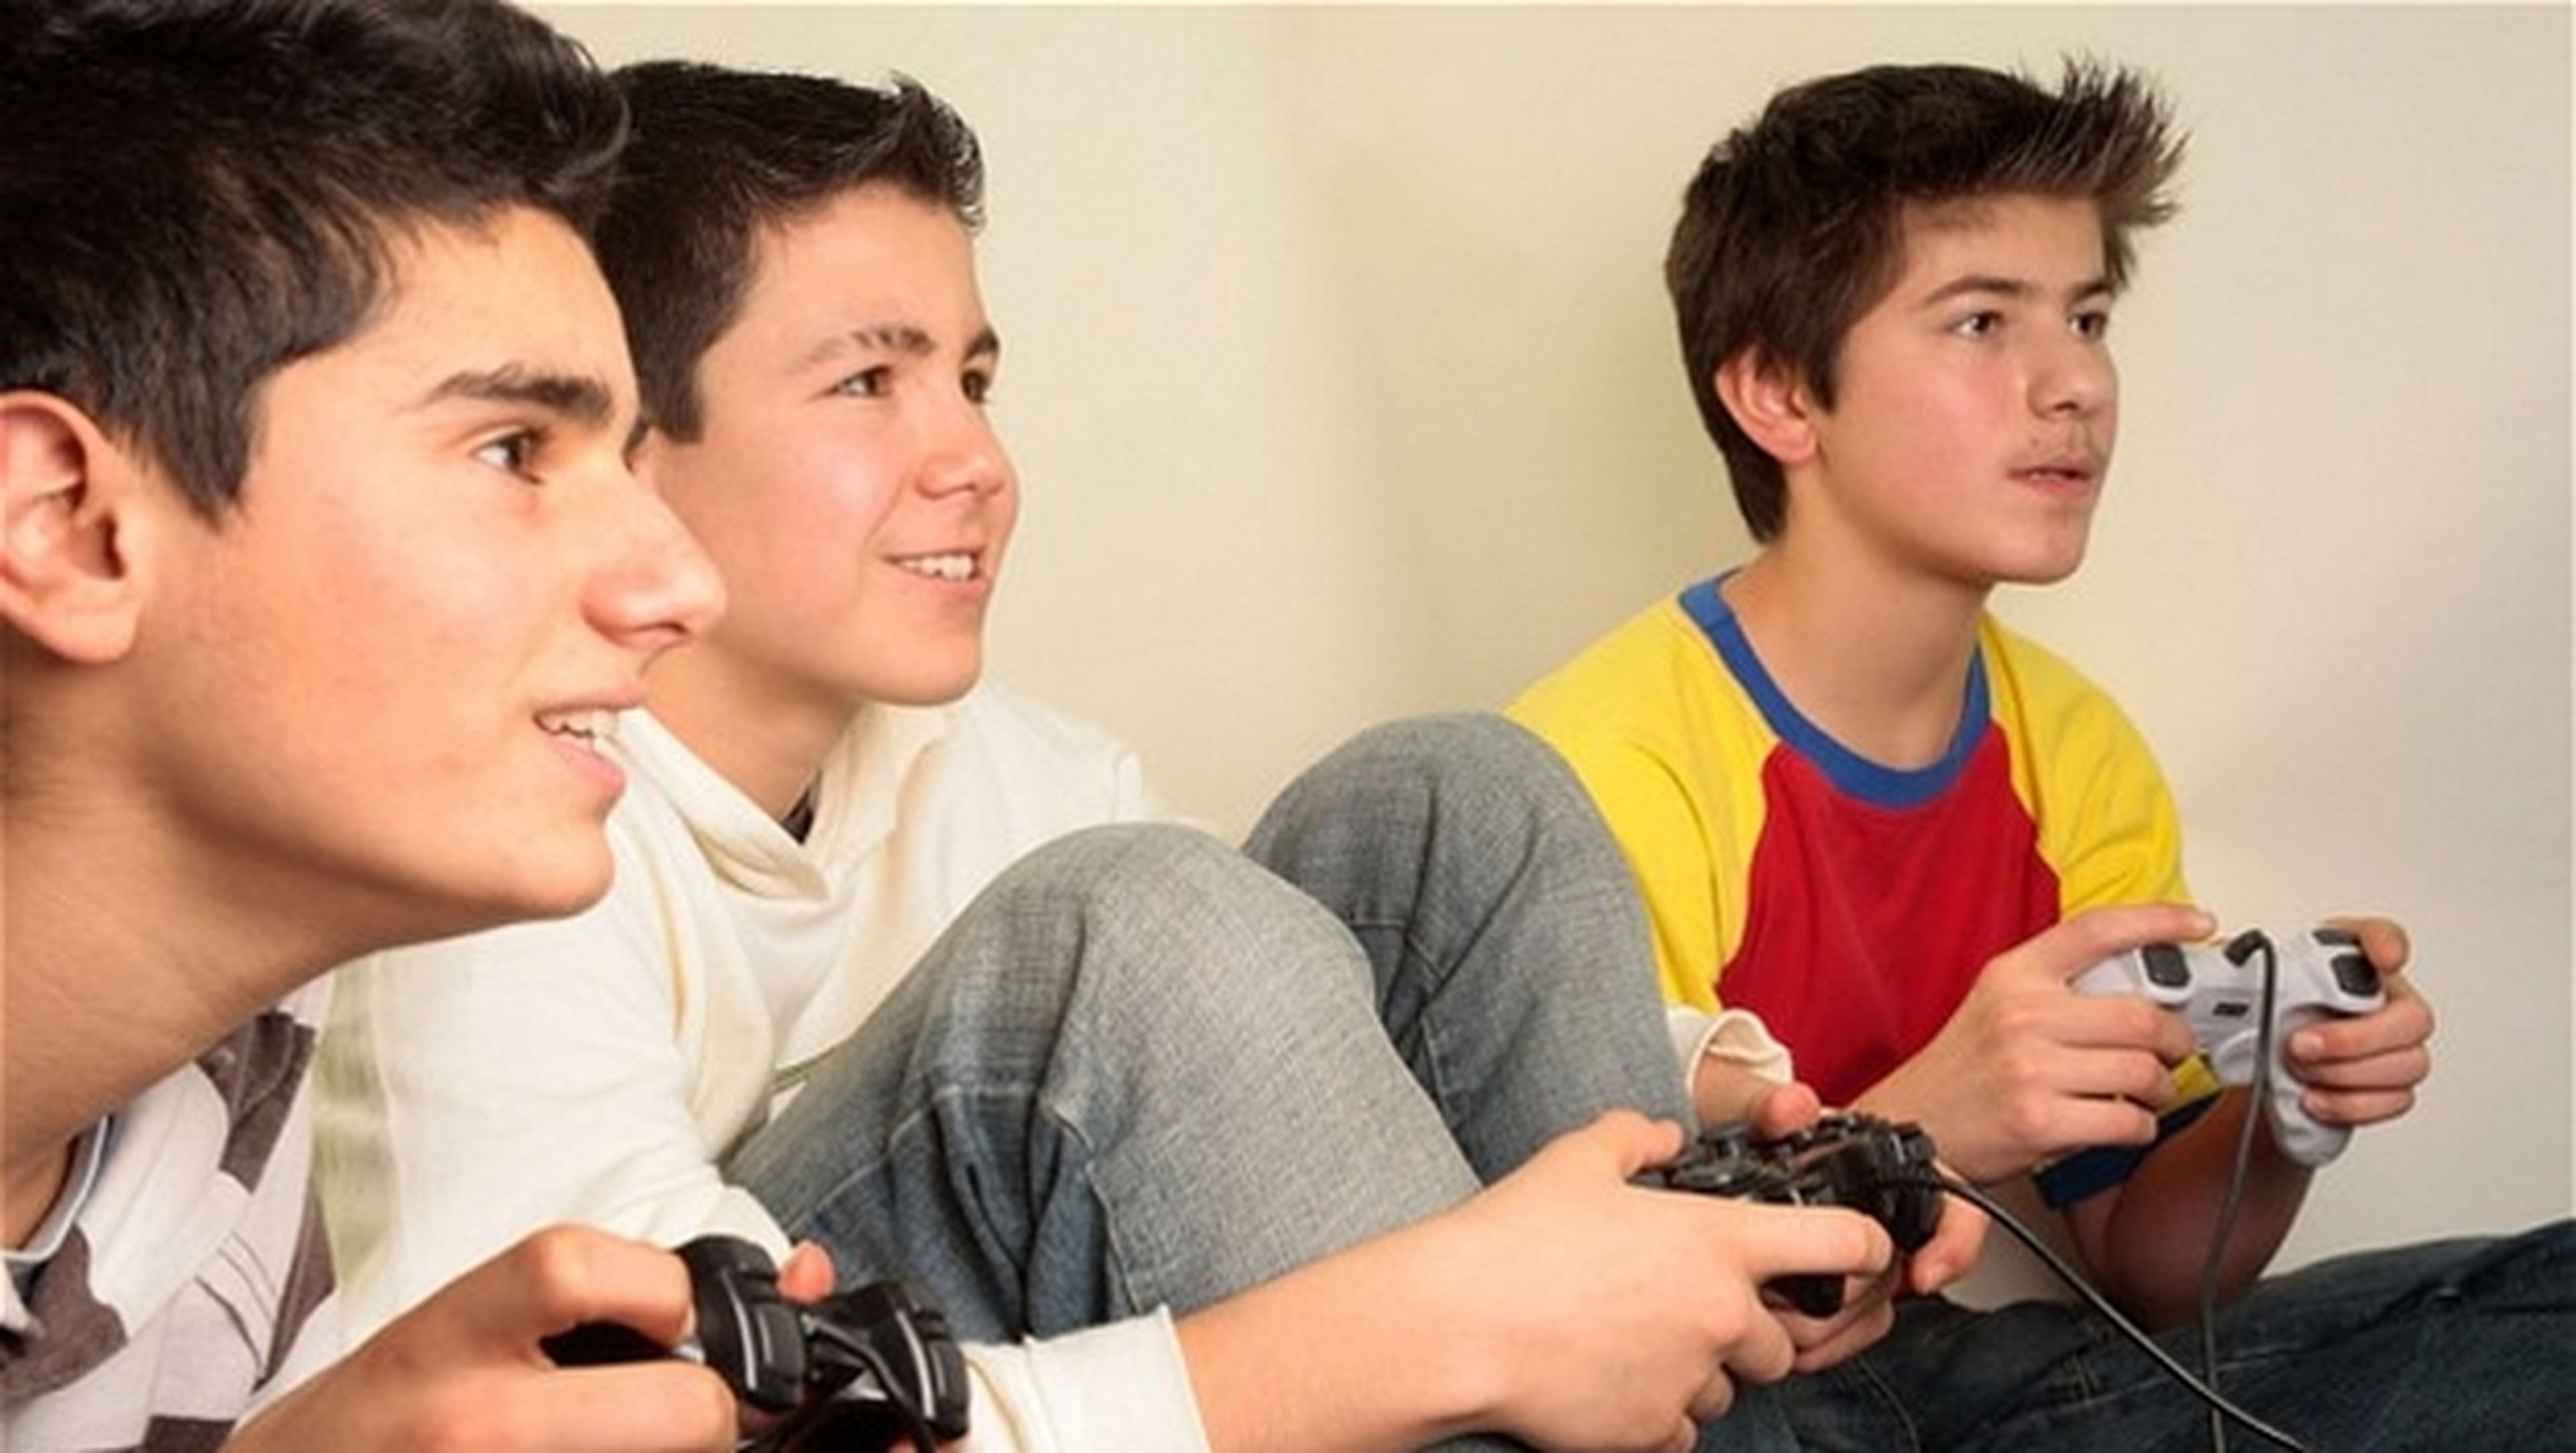 They like to play games. Видеоигры для подростков. Дети играют в Видеоигры. Ребенок играющий в приставку. Играющий подросток.